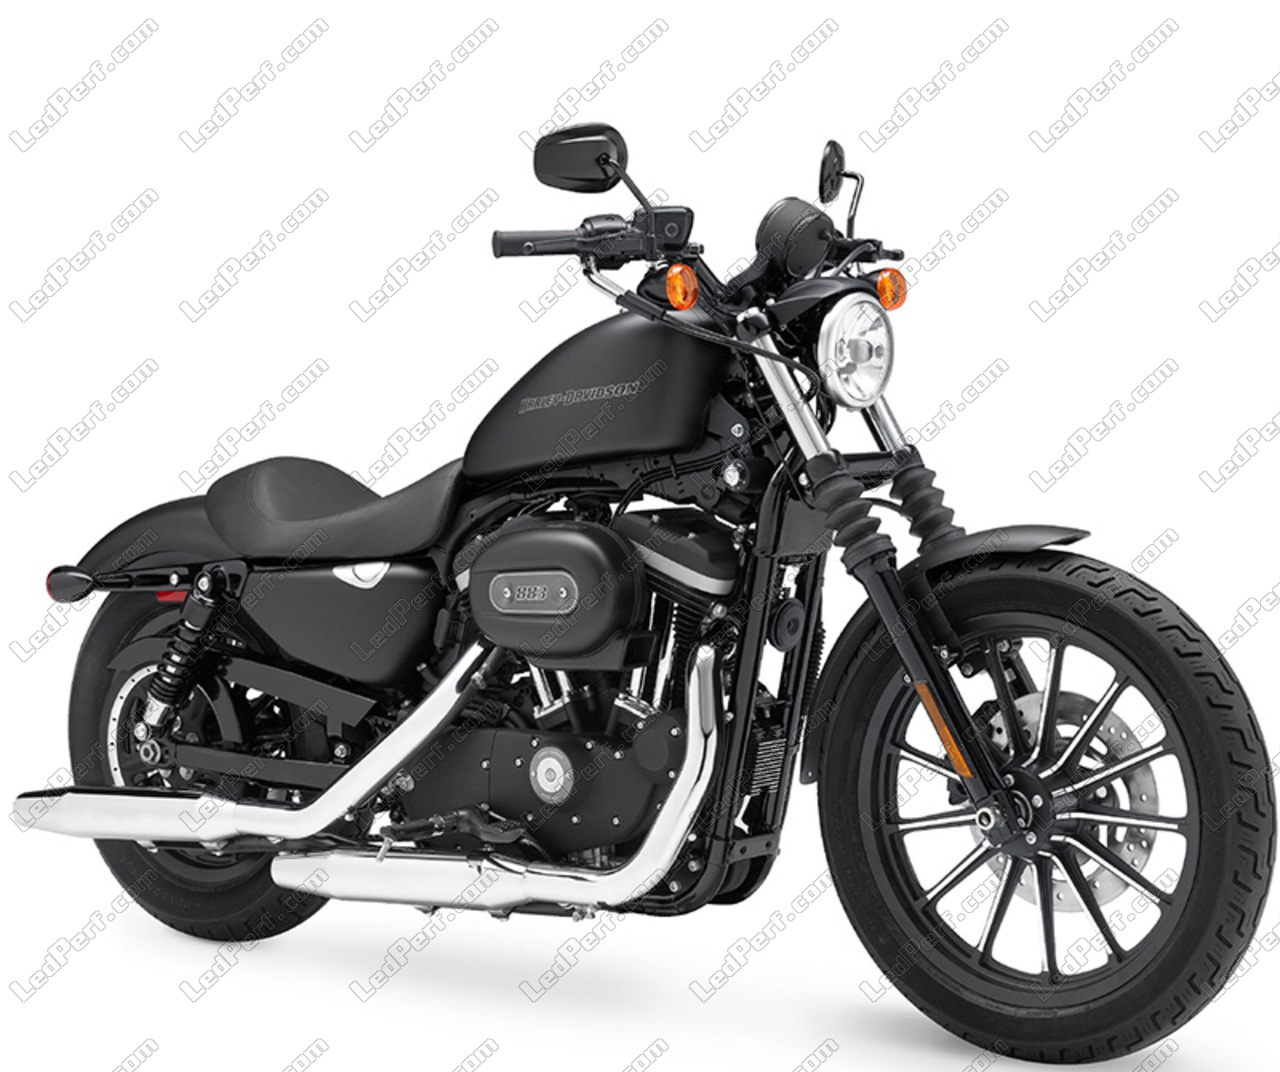 Led Sidelight Pack For Harley Davidson Iron 883 2007 2015 Sidelight Bulbs